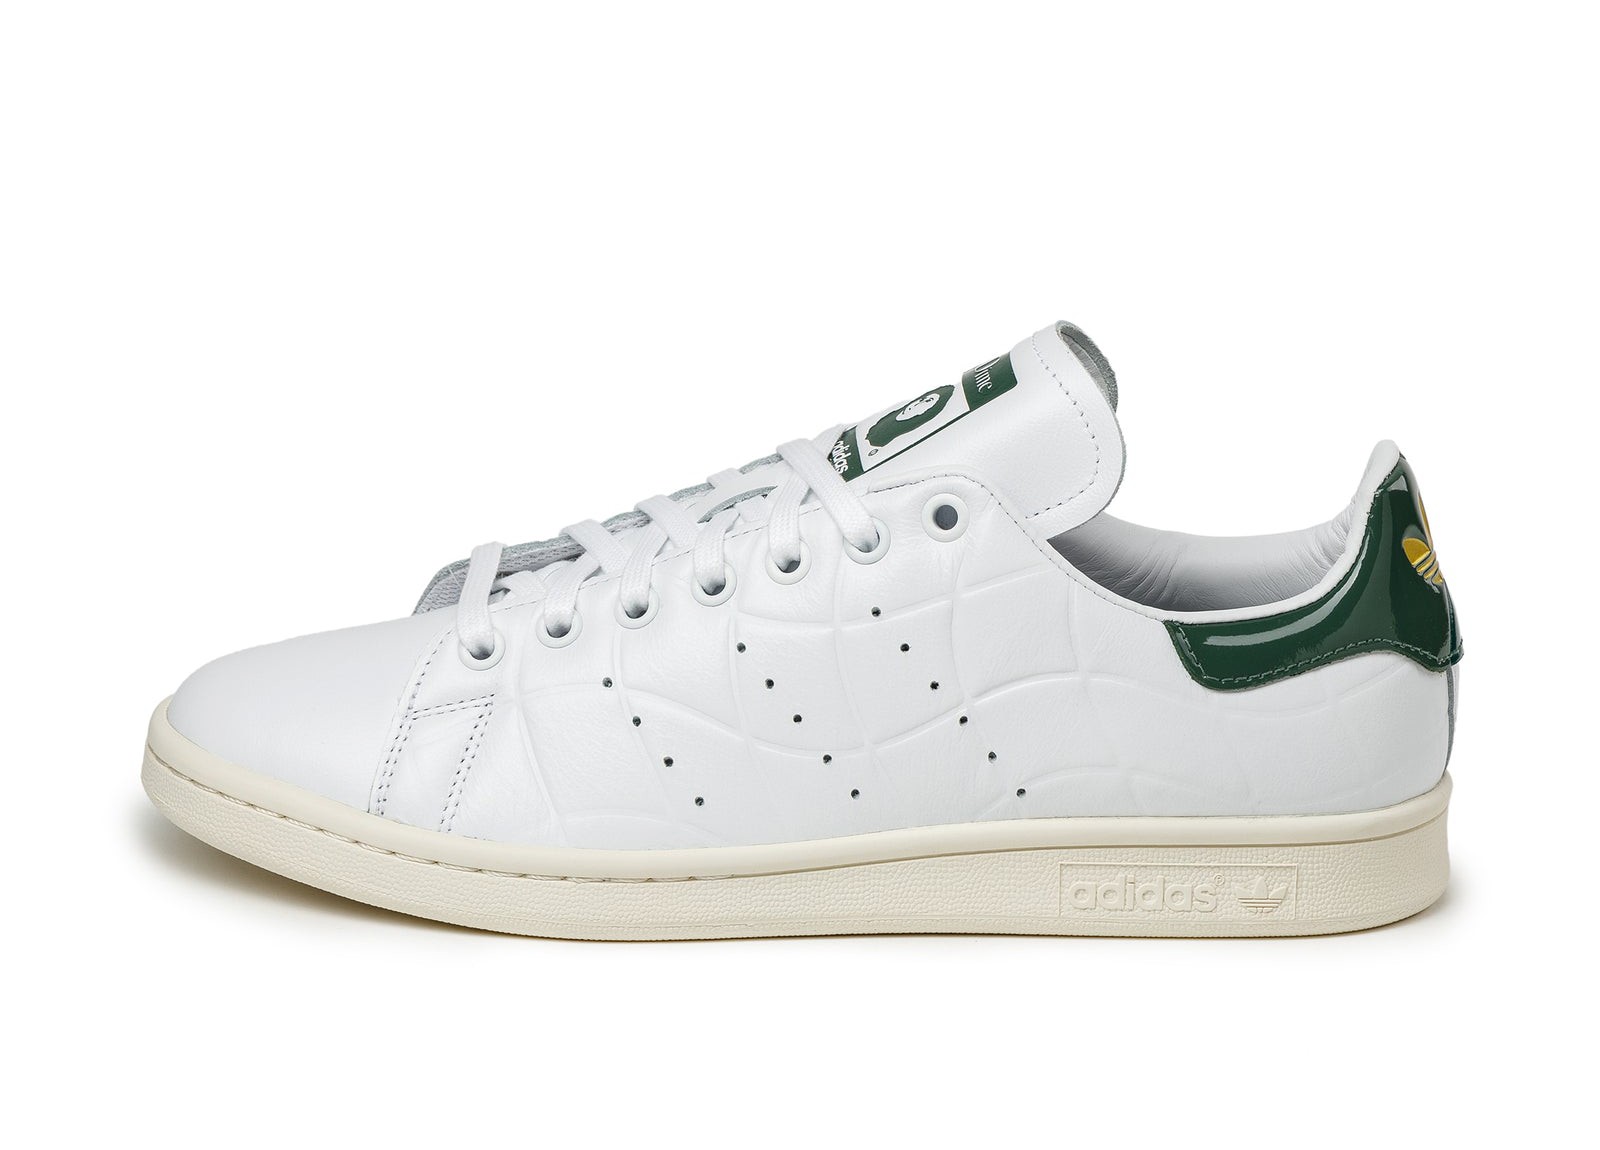 Adidas x DIME
Stan Smith
White / Collegiate Green